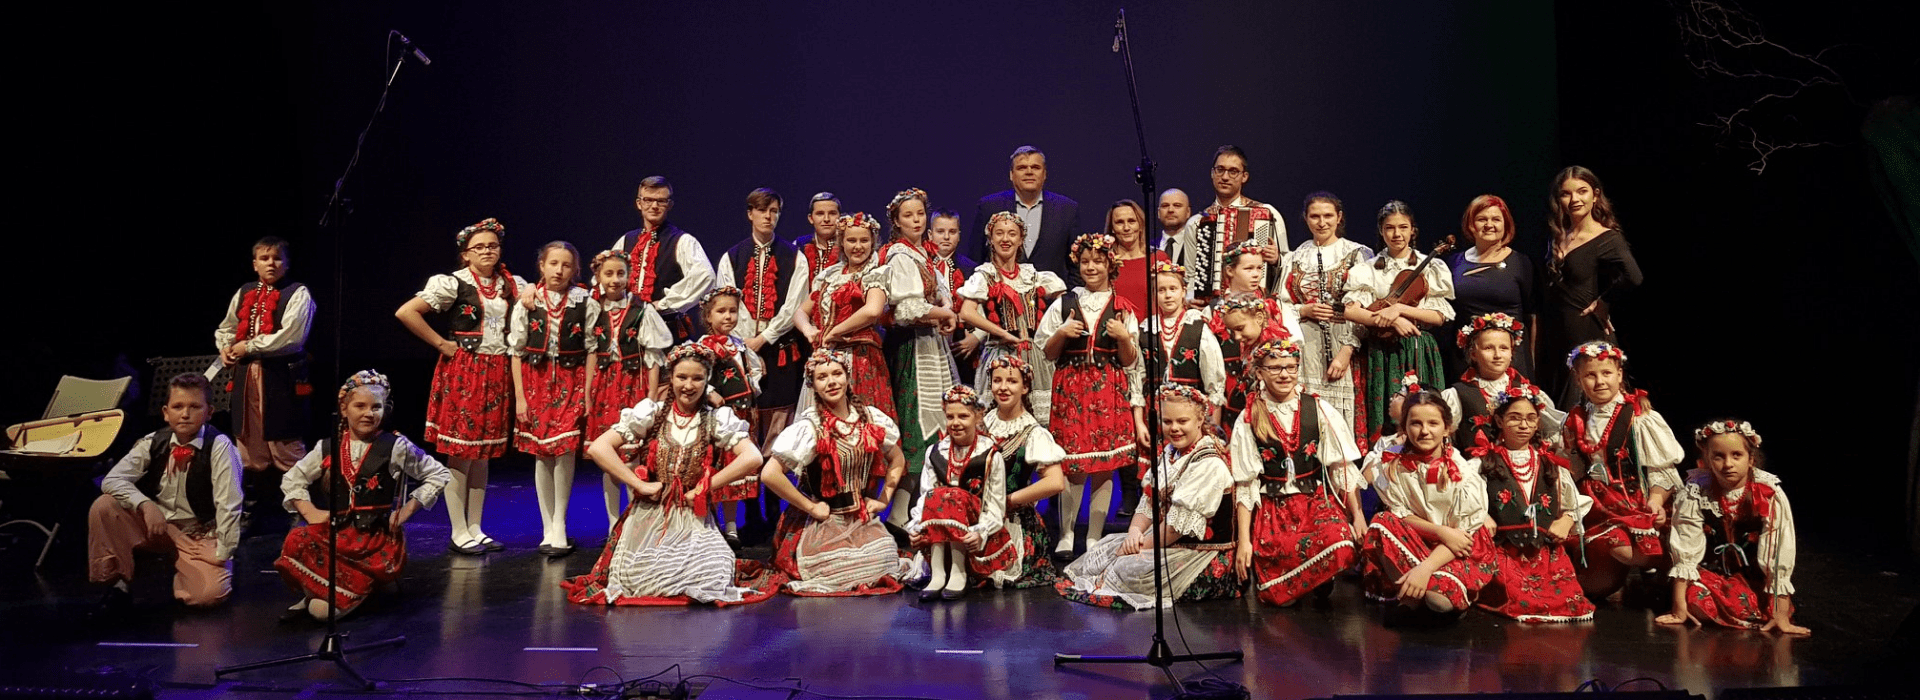 Zespół Tańca Ludowego "Długołęka"